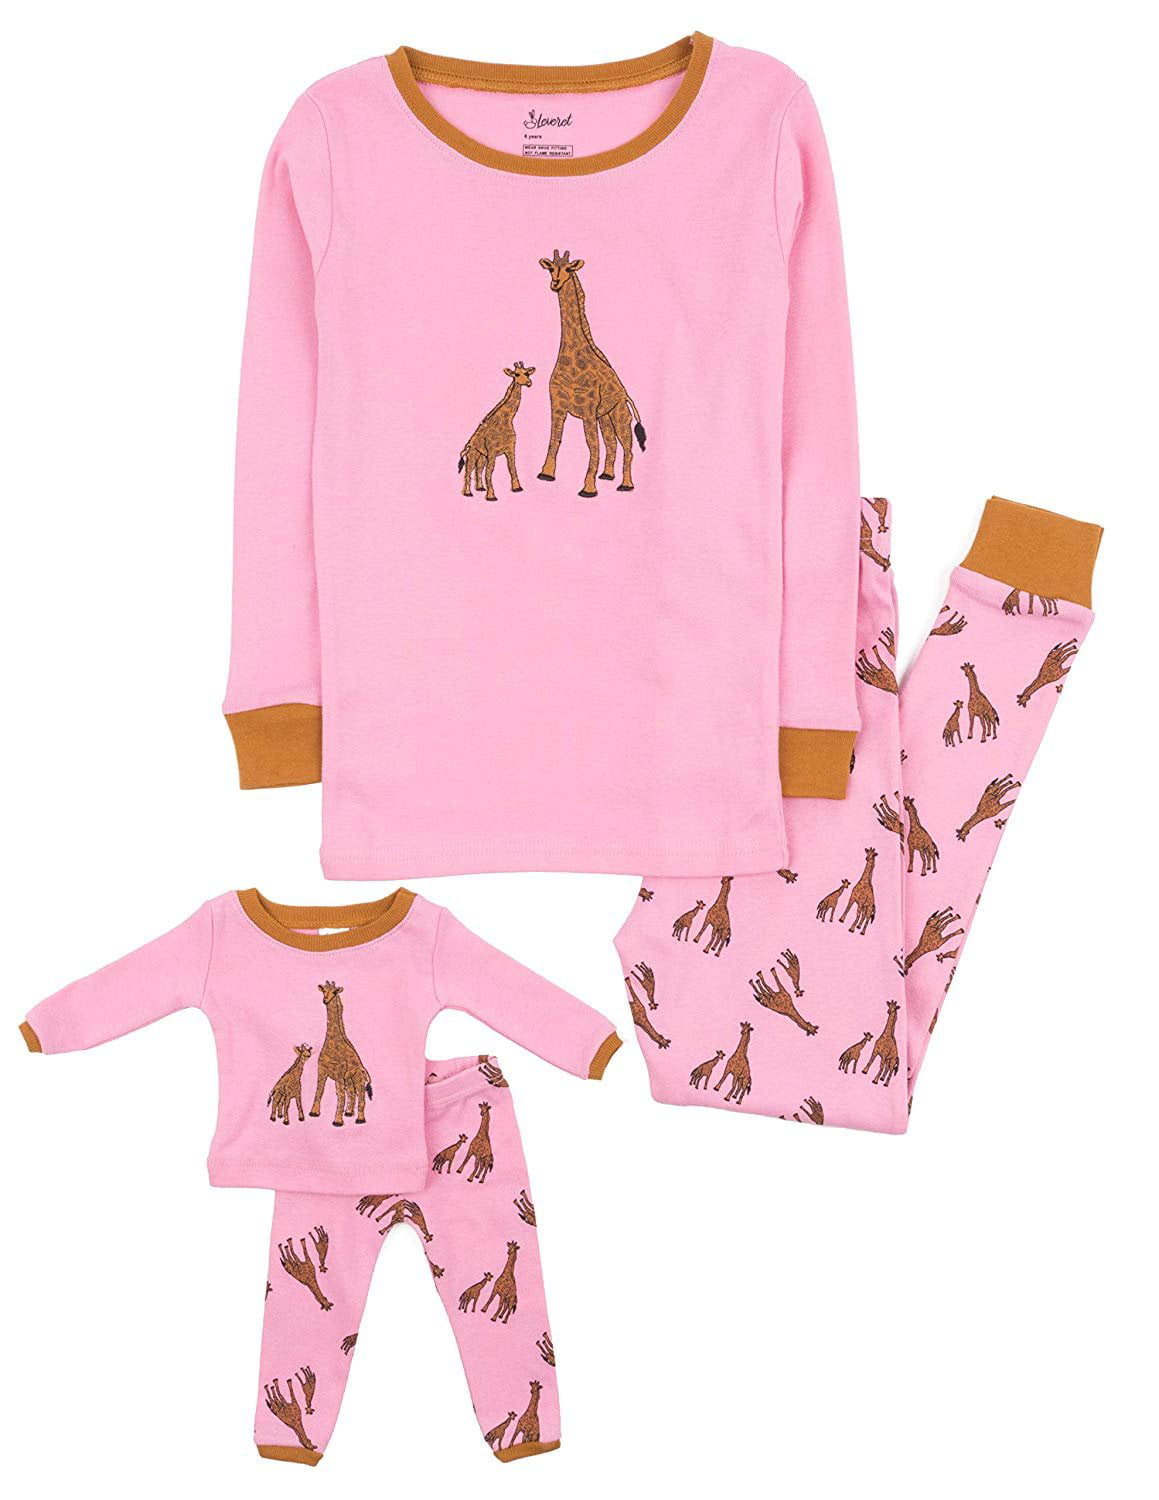 Little Girls Pajamas Baby Children Horse Pyjamas 100% Cotton Pink Toddler Sleepwear